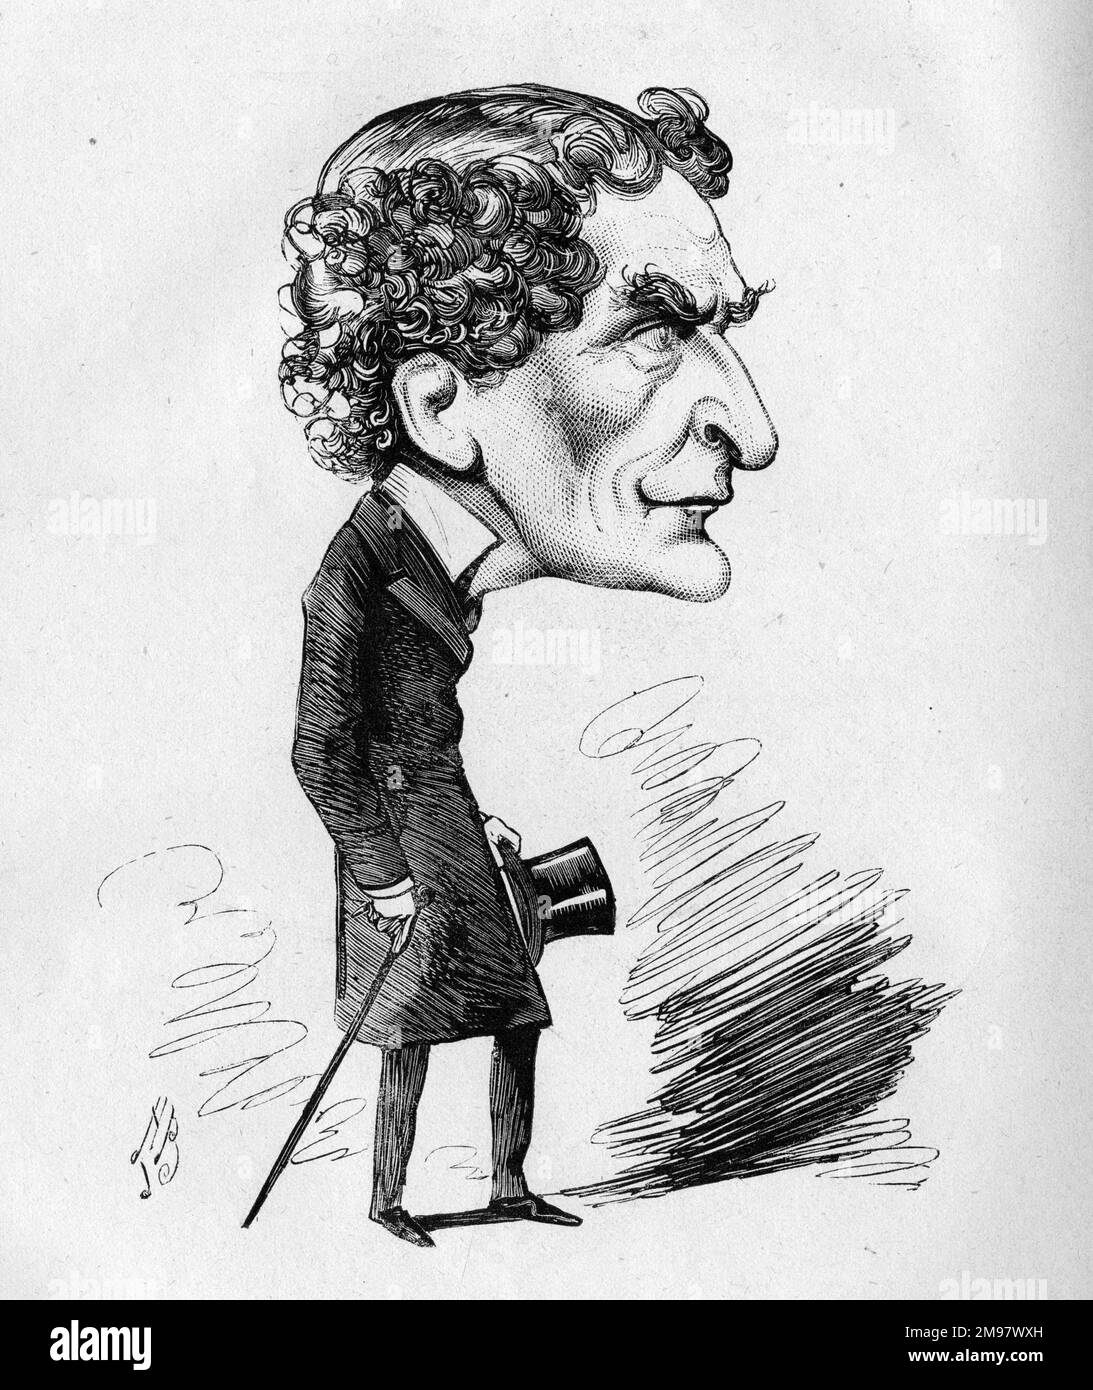 Caricatura, Tom Mead (1821-1889), actor inglés, con frecuencia interpreta como el villano debido a su profunda voz. En 1882 interpretó el papel de Apothecary en la producción de Henry Irving de Romeo y Julieta en el Lyceum Theatre de Londres. Foto de stock